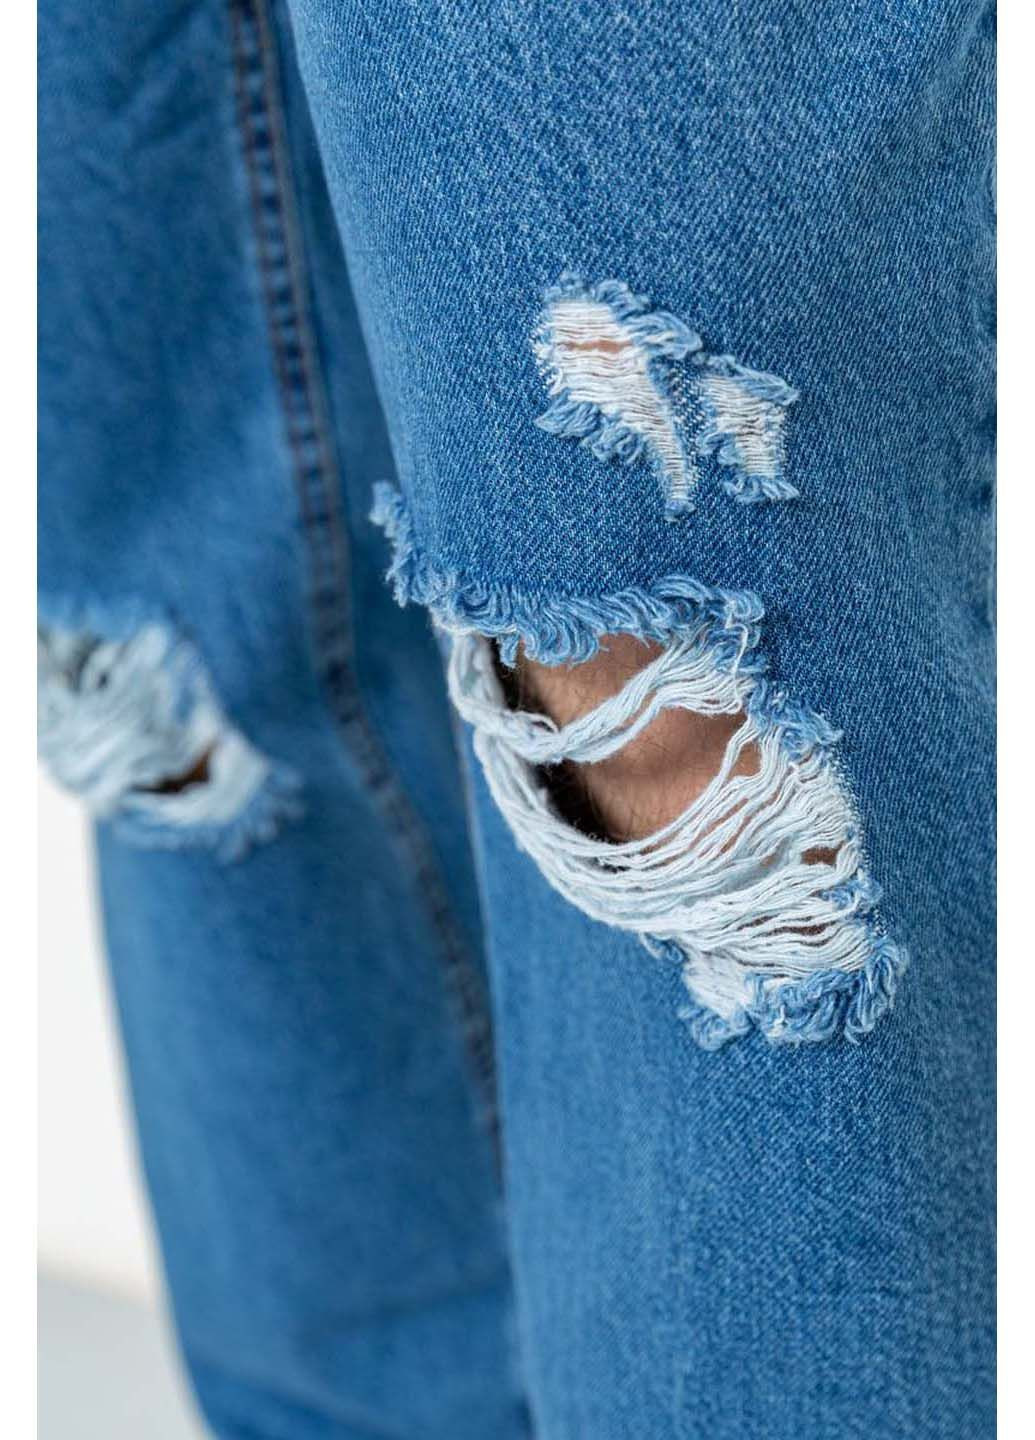 Голубые демисезонные джинсы Ager